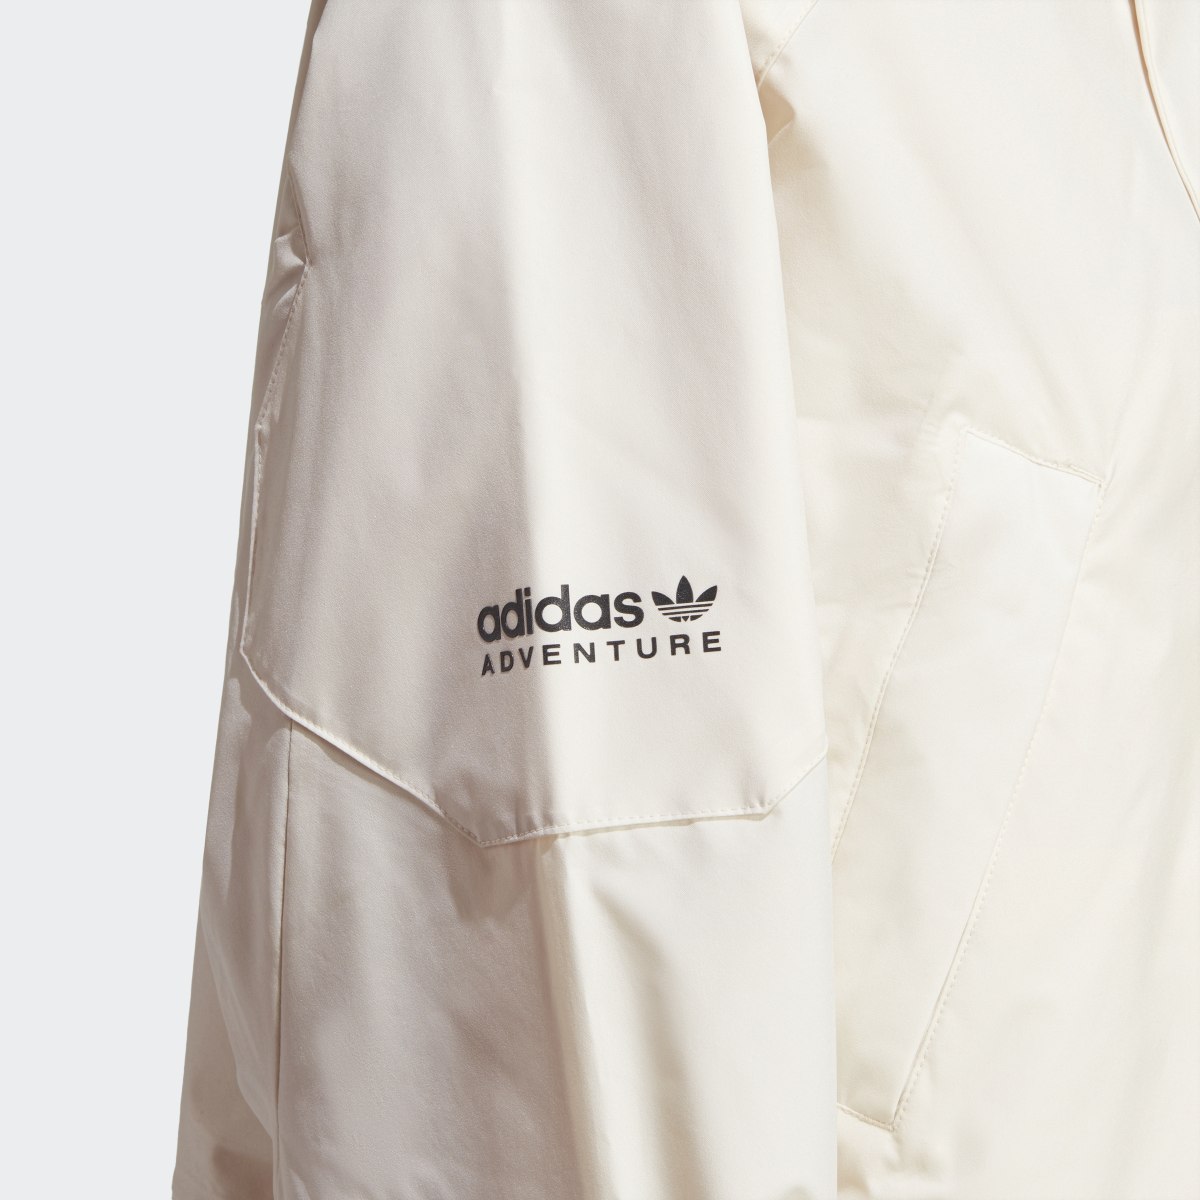 Adidas Adventure Crop Jacket. 6